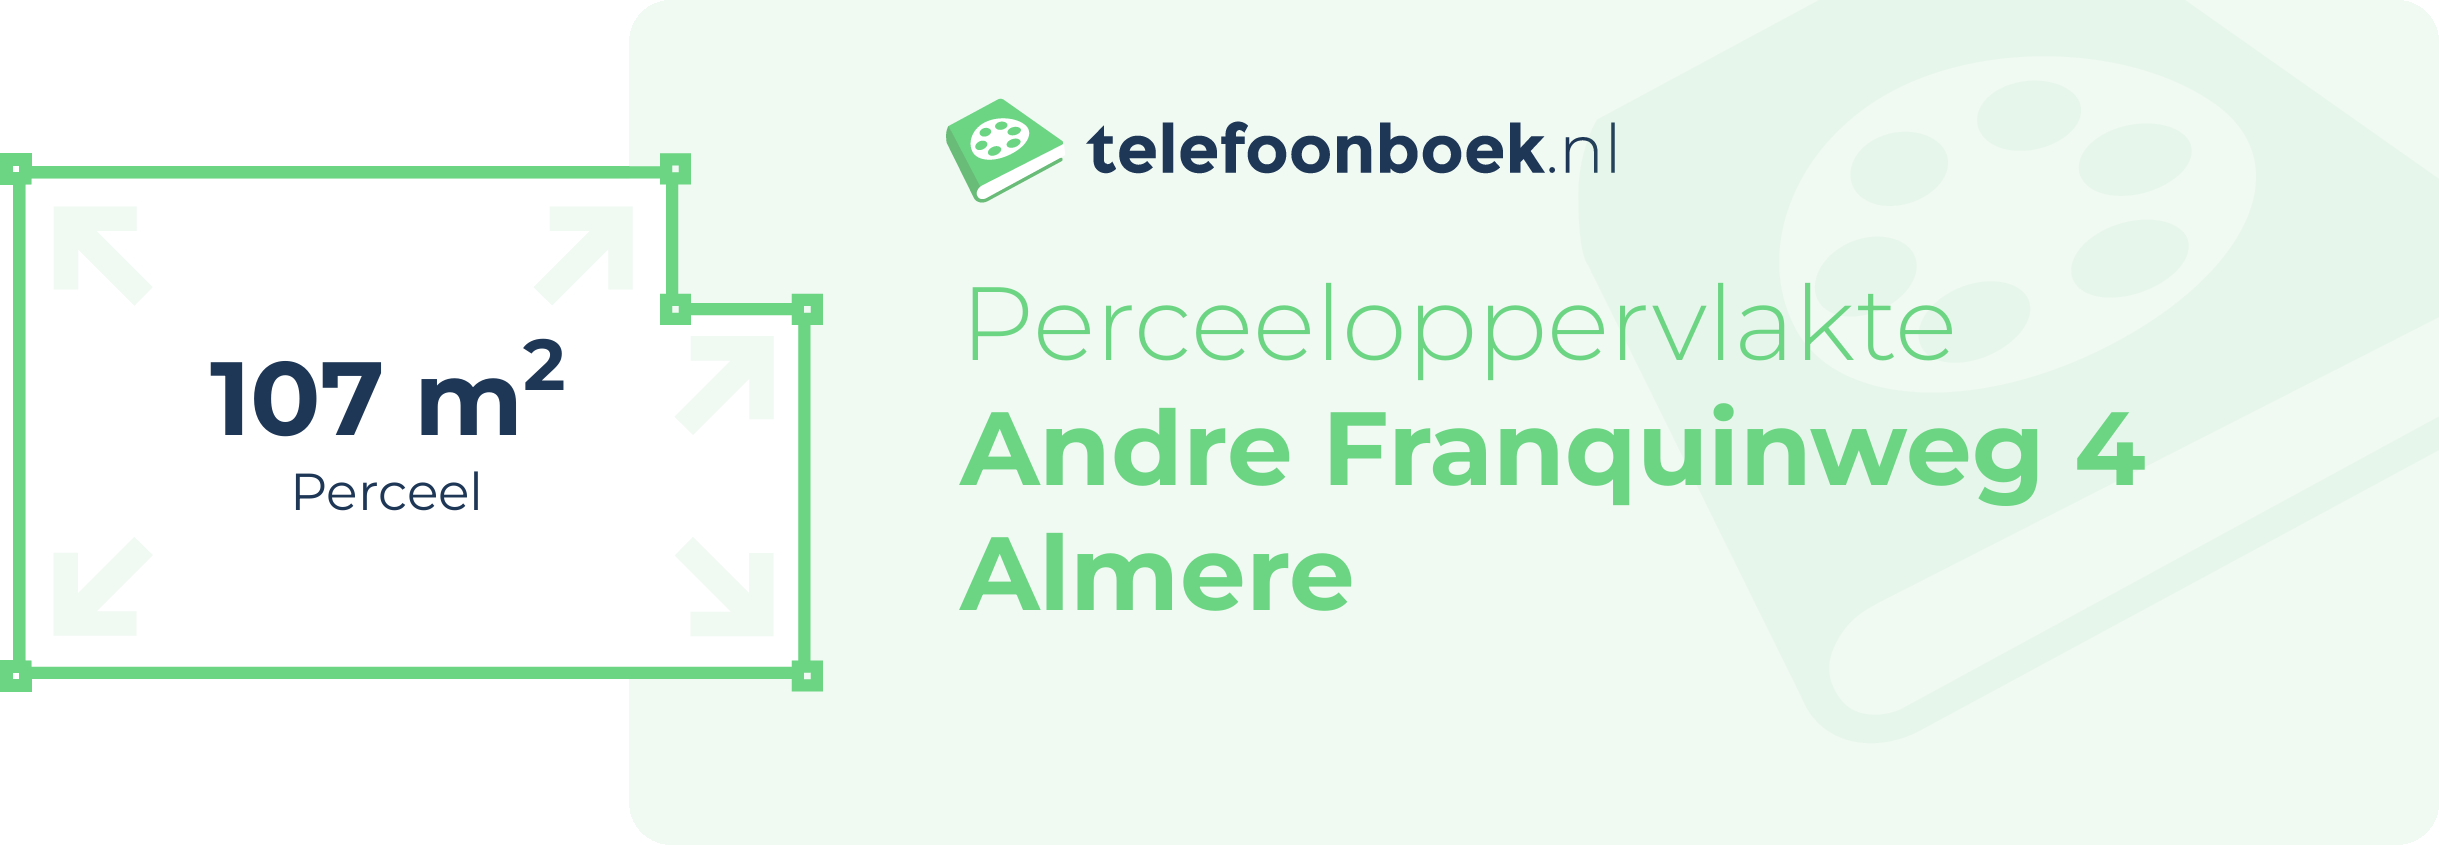 Perceeloppervlakte Andre Franquinweg 4 Almere